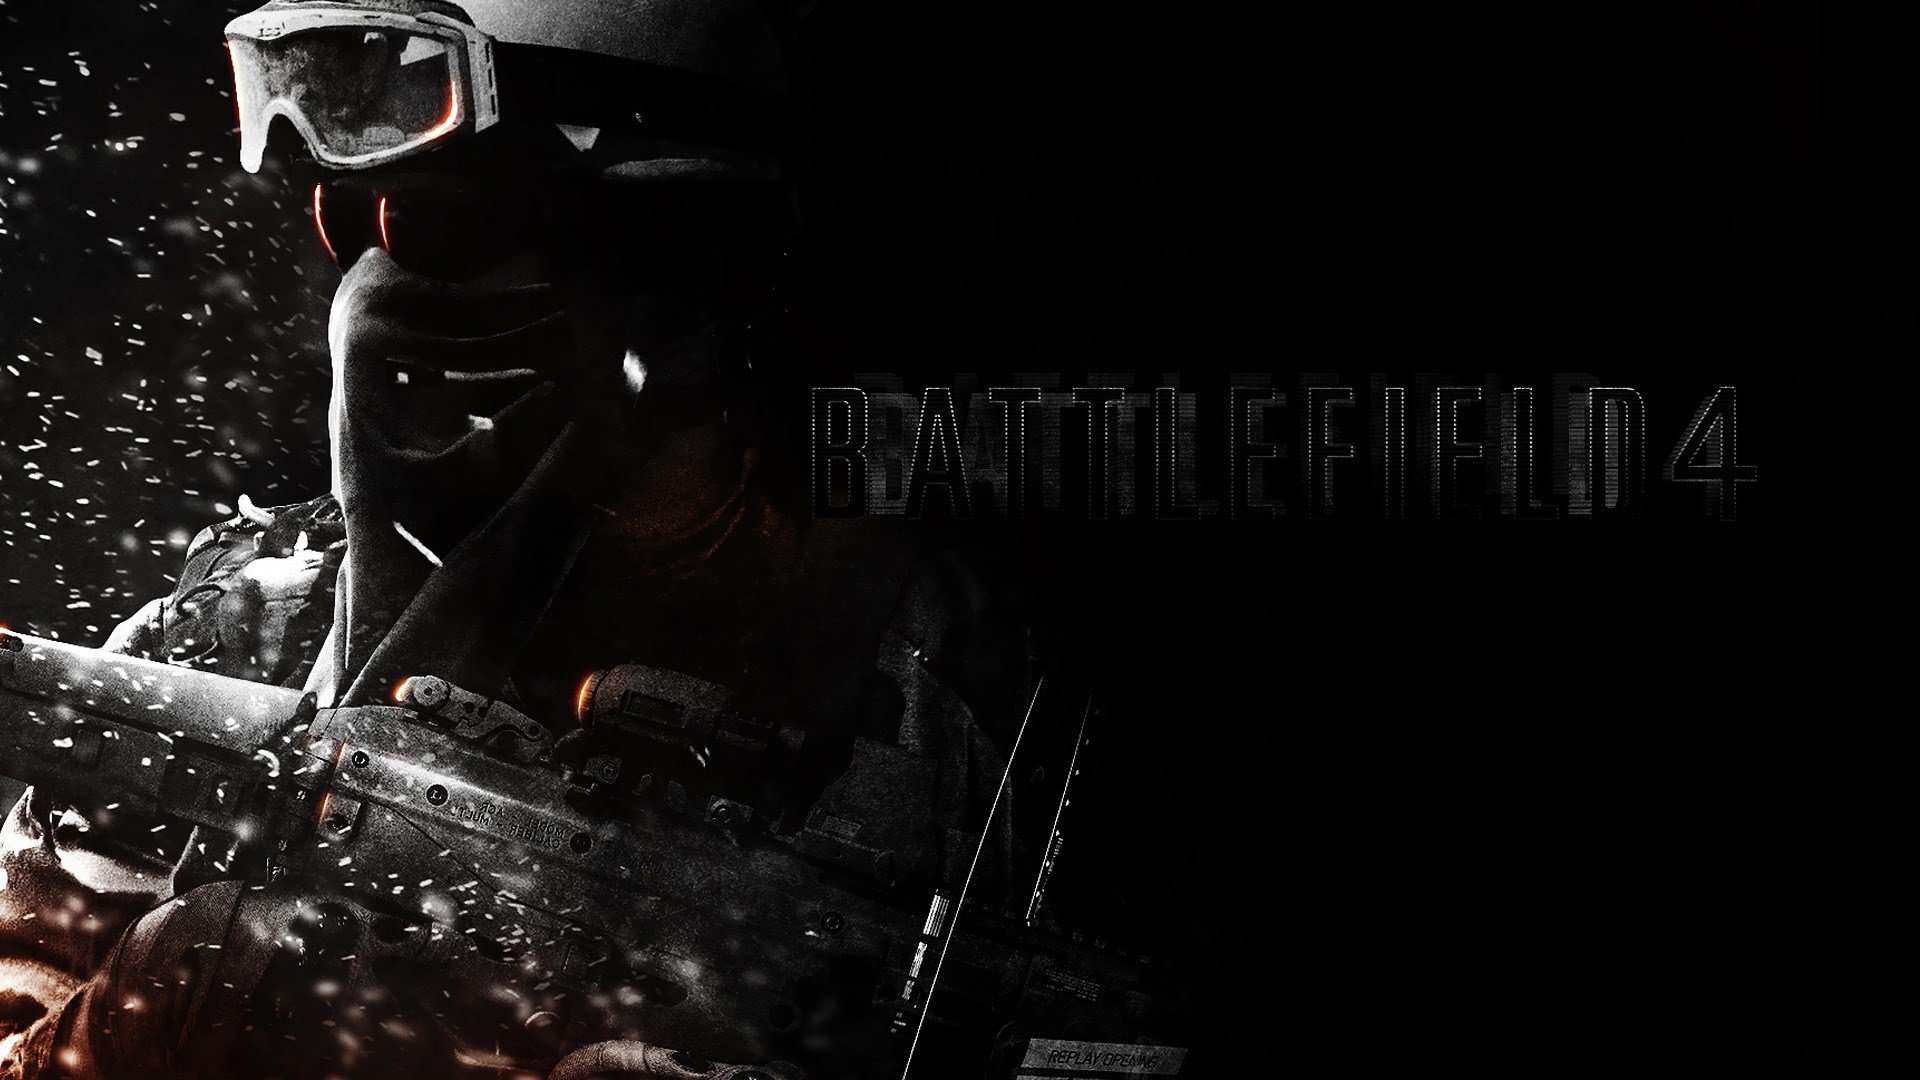 Free download Battlefield 4 wallpaper ID:498250 full hd for desktop